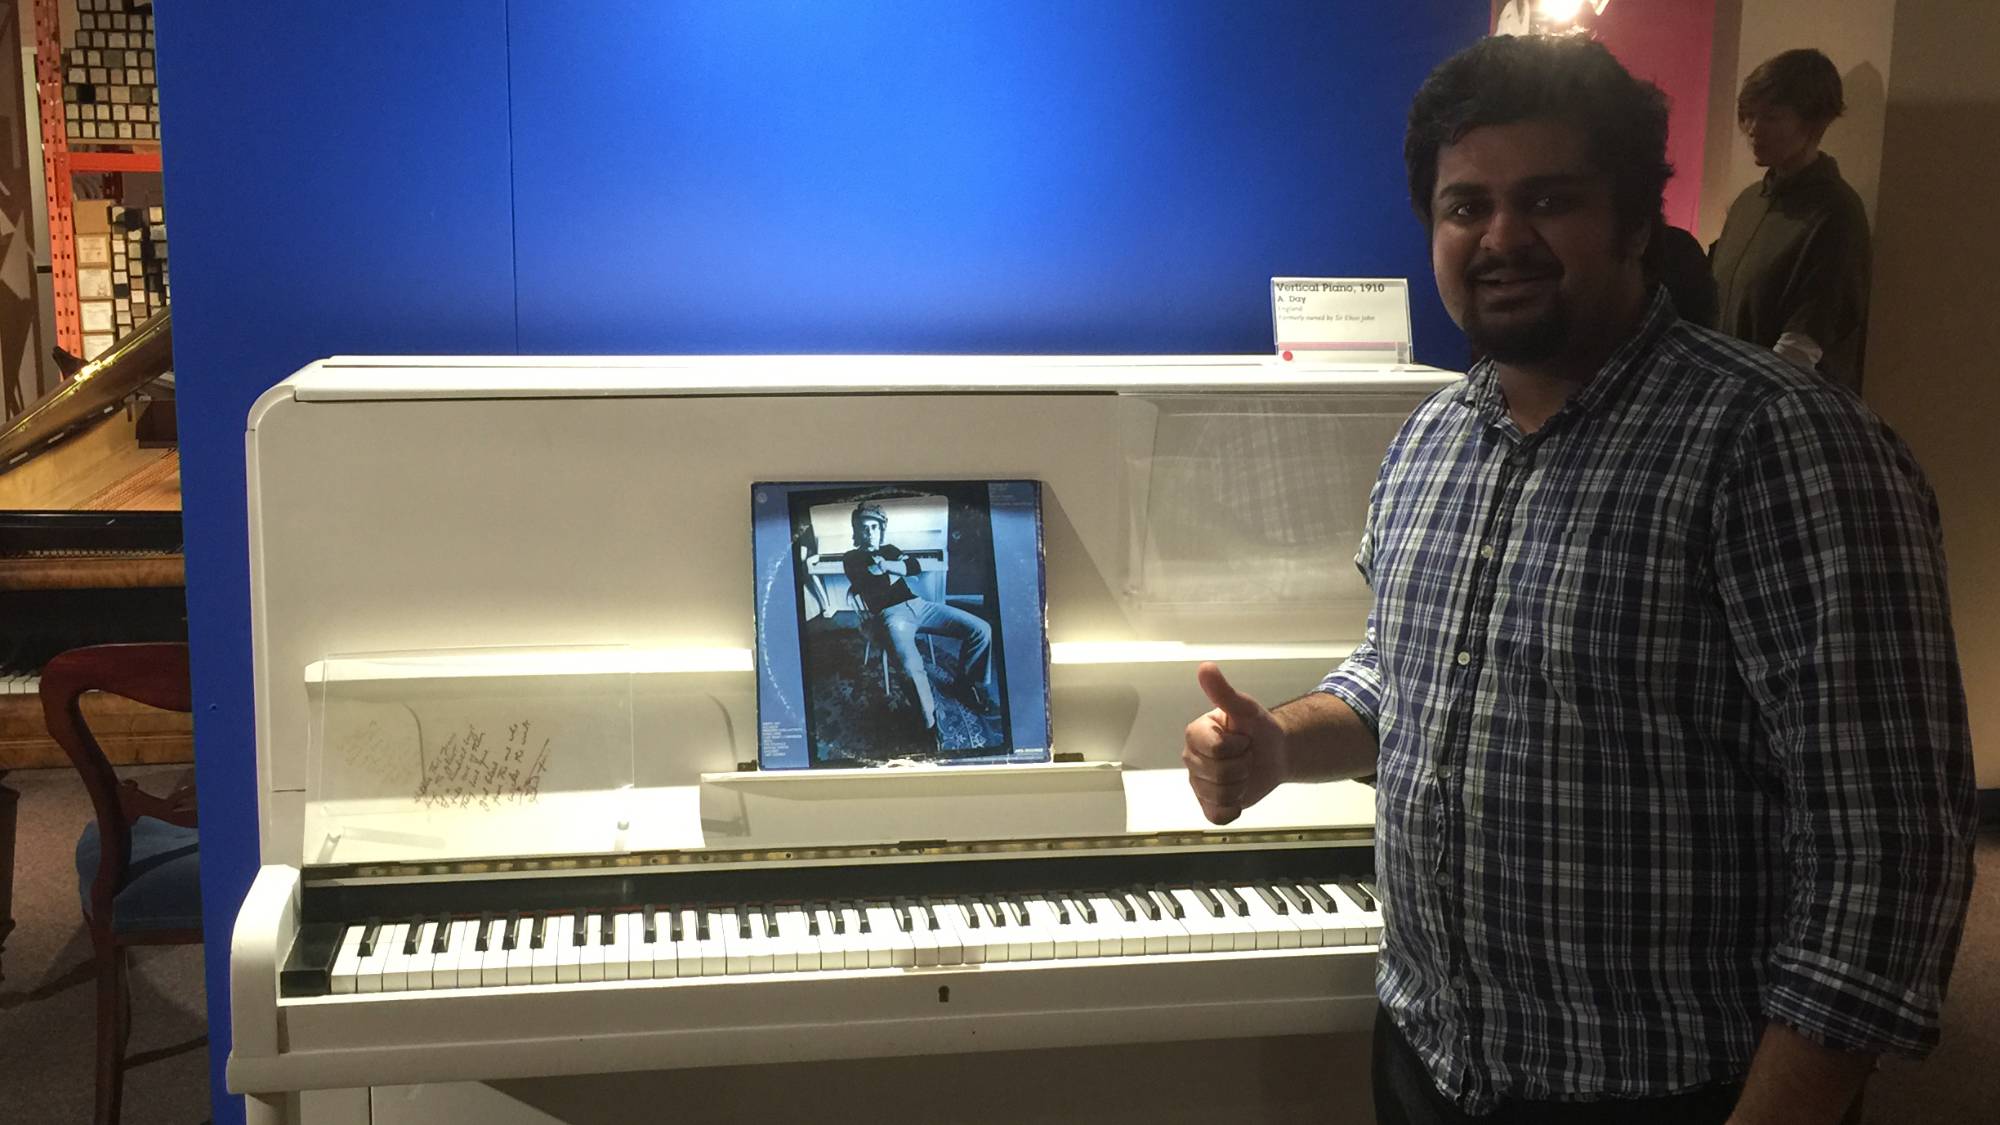 With Elton John's Piano at NMC, Calgary